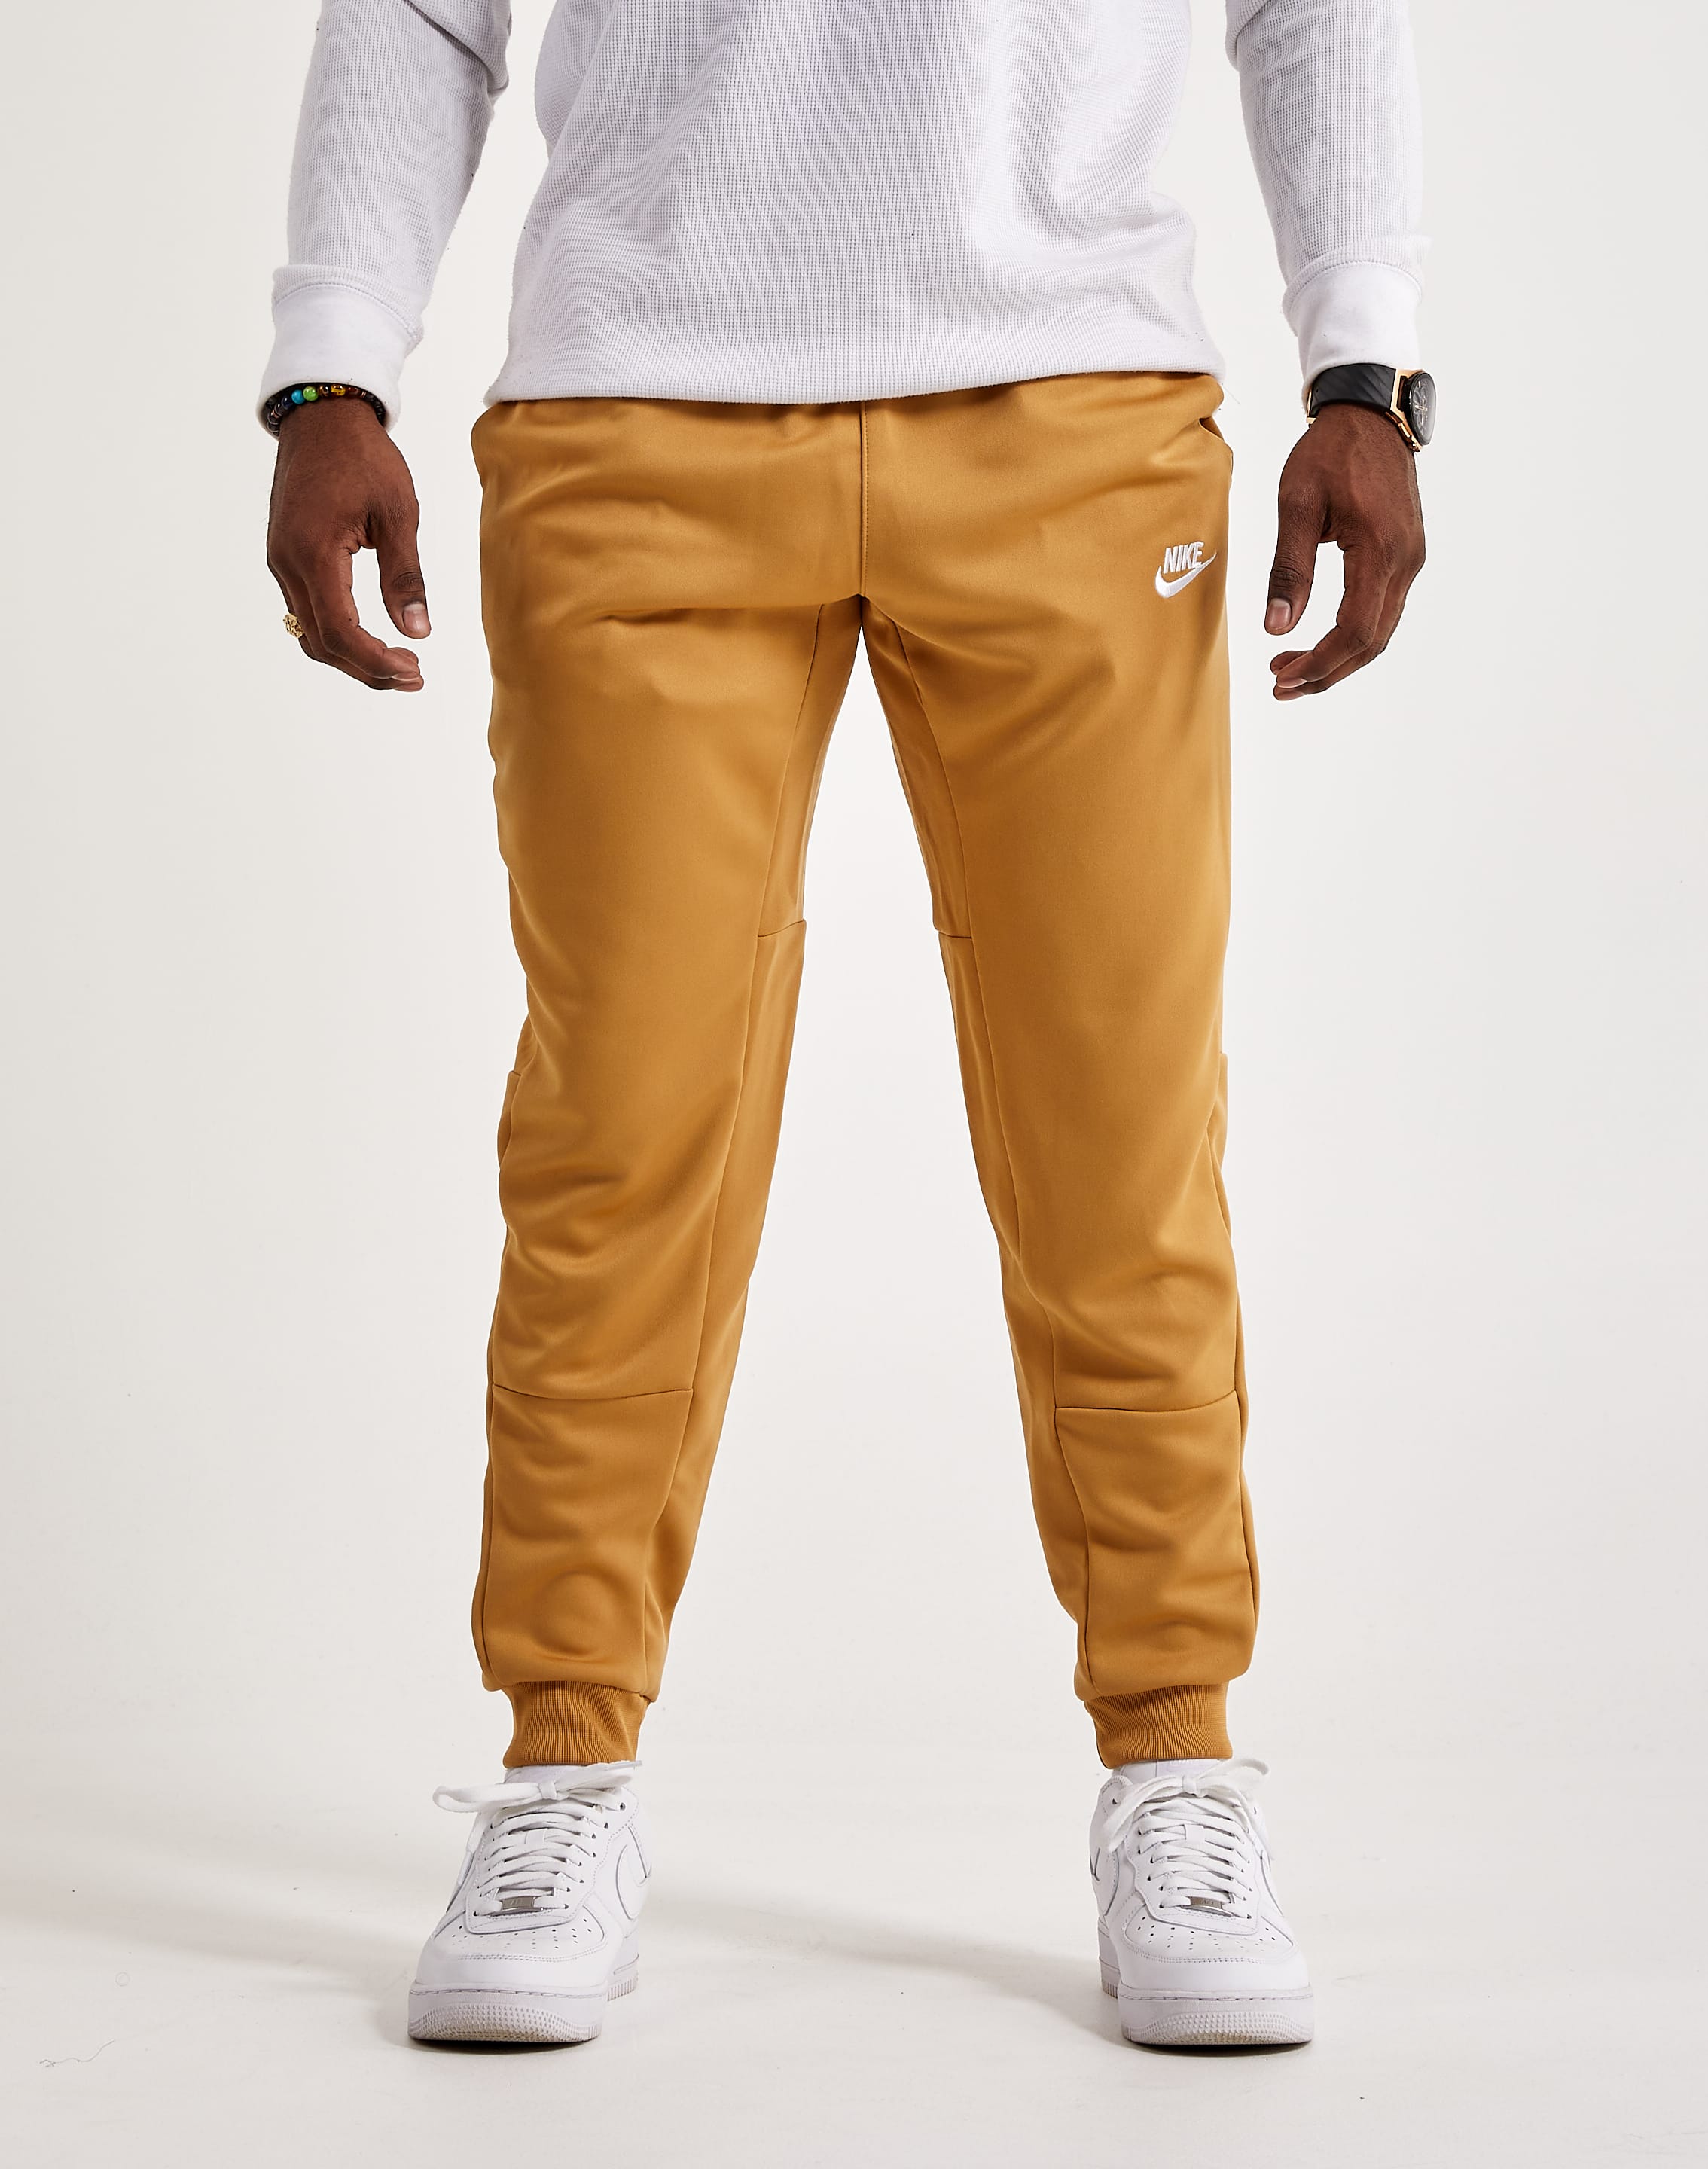 Beige Sportswear Club Sweatpants by Nike on Sale